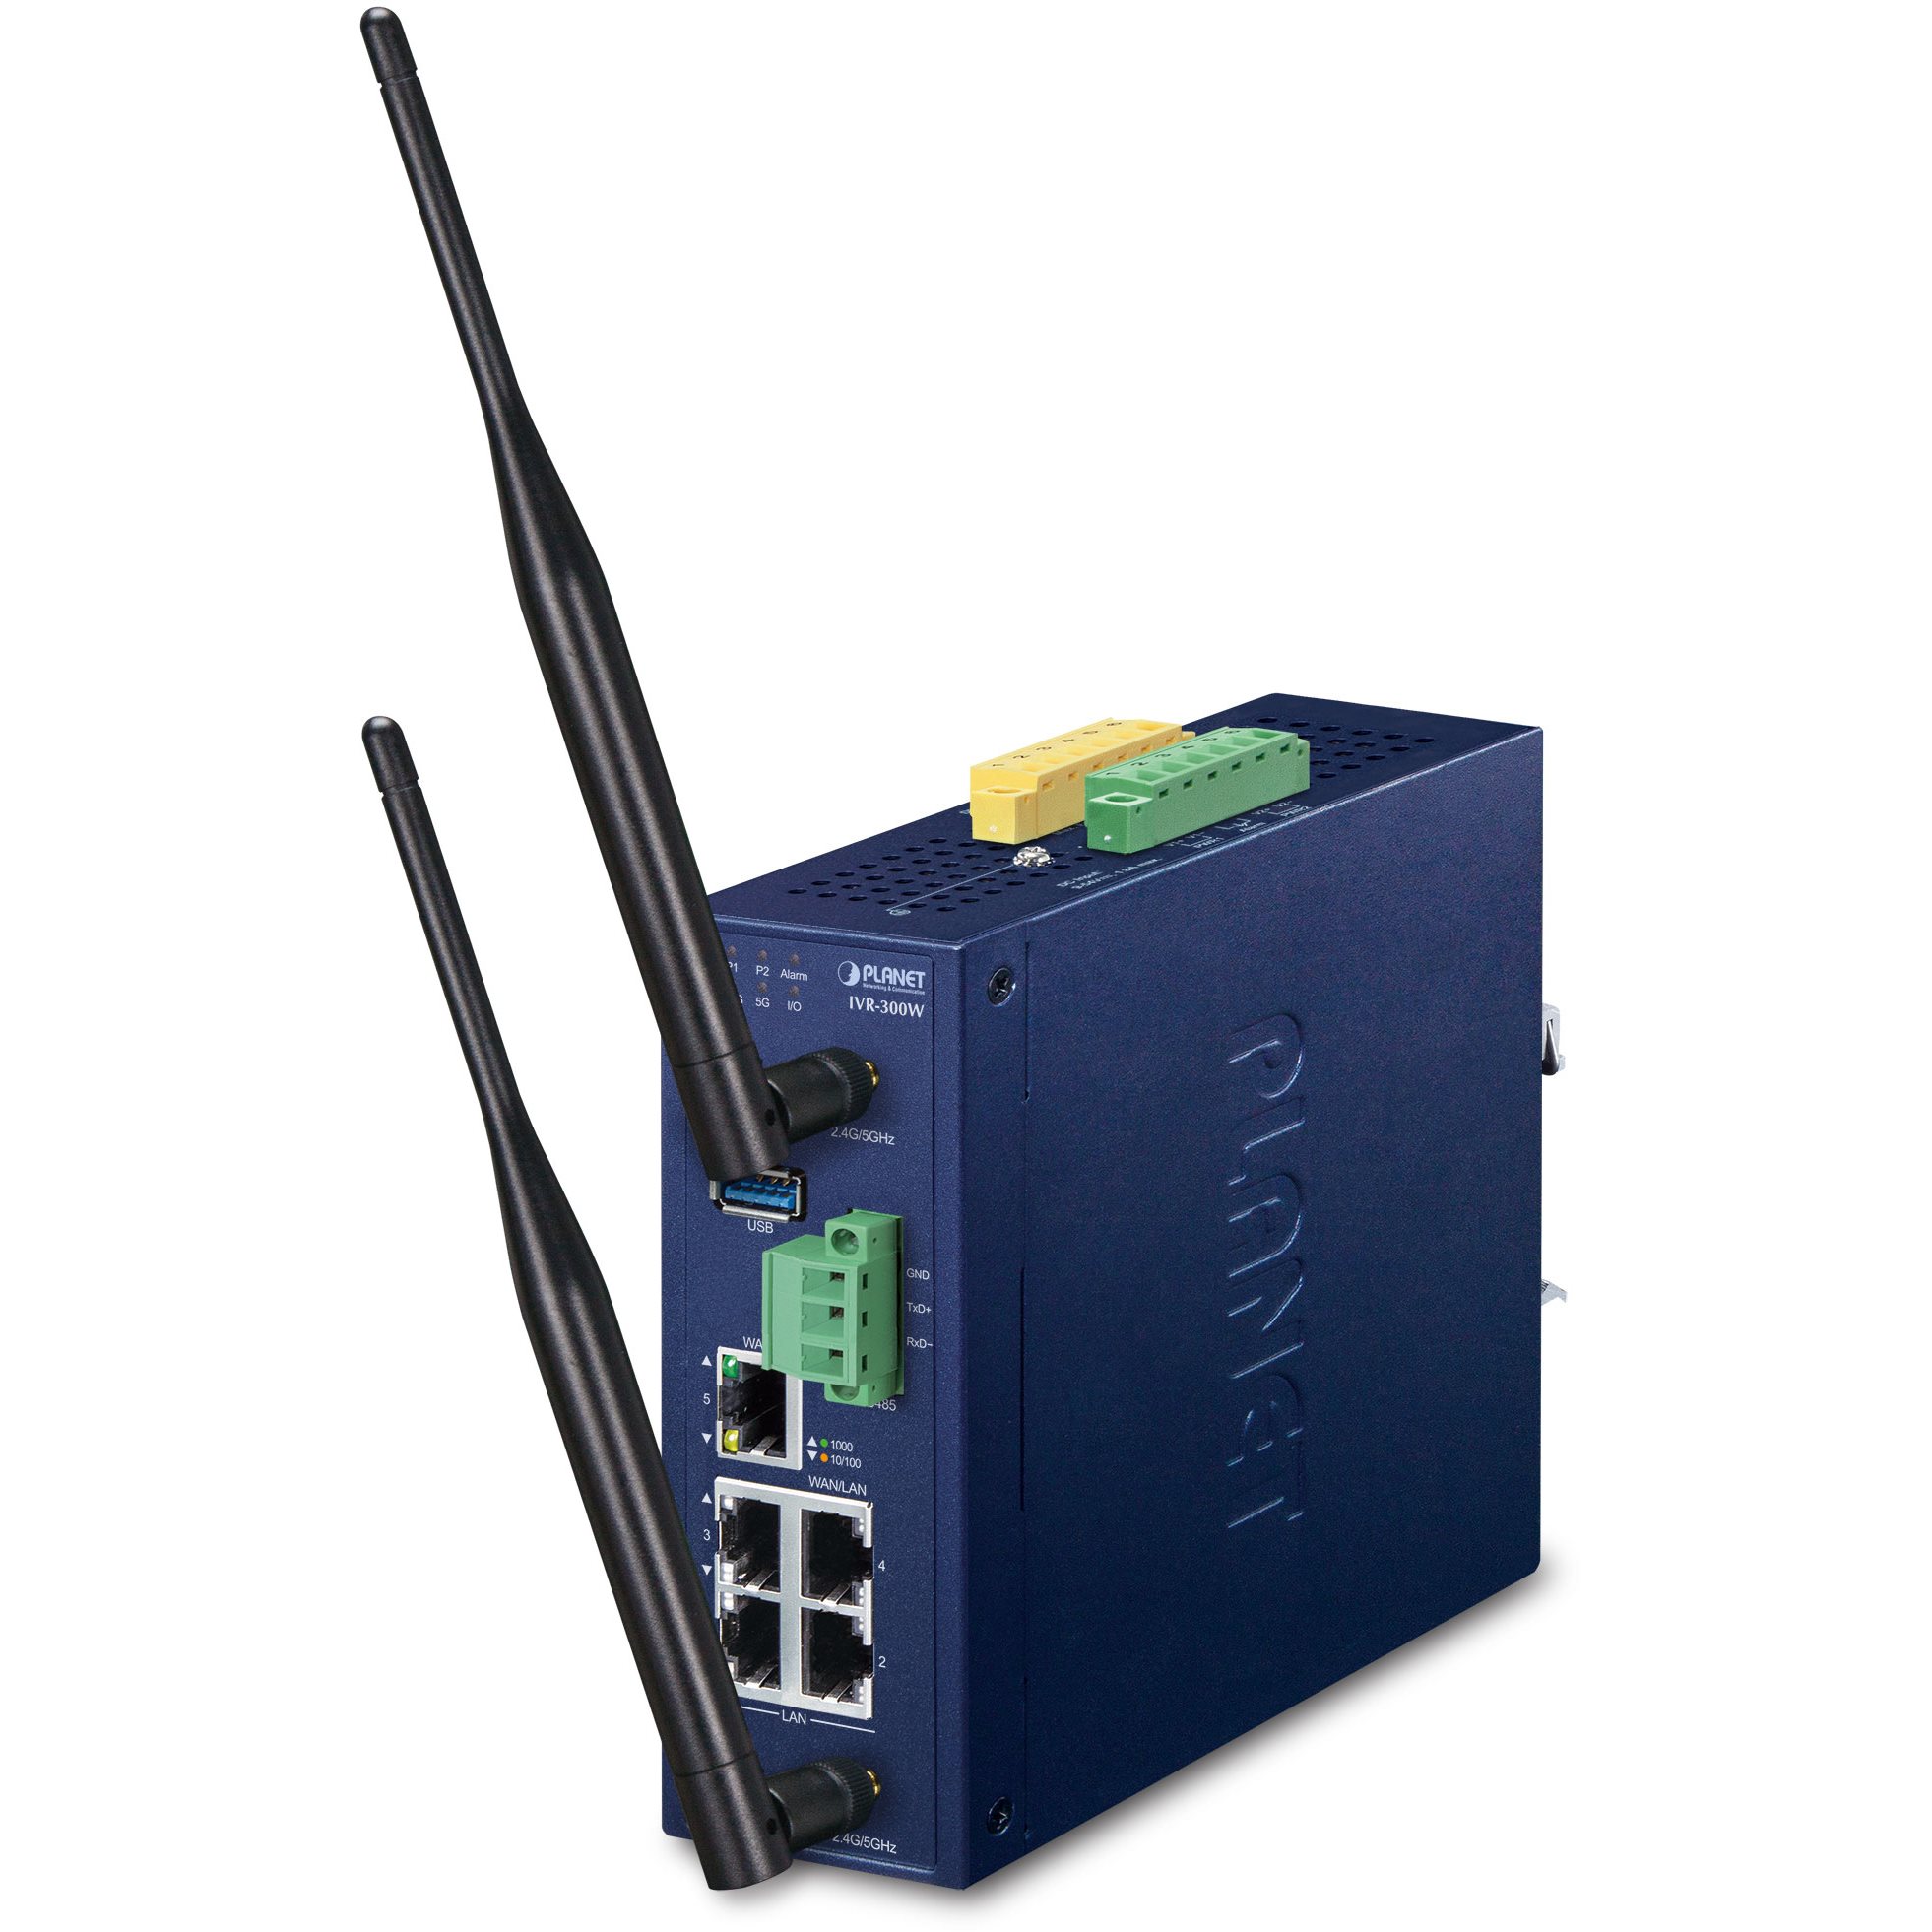  Routeurs Pro Routeur indus VPN 5 ports Giga Wifi ax -40/75°C IVR-300W